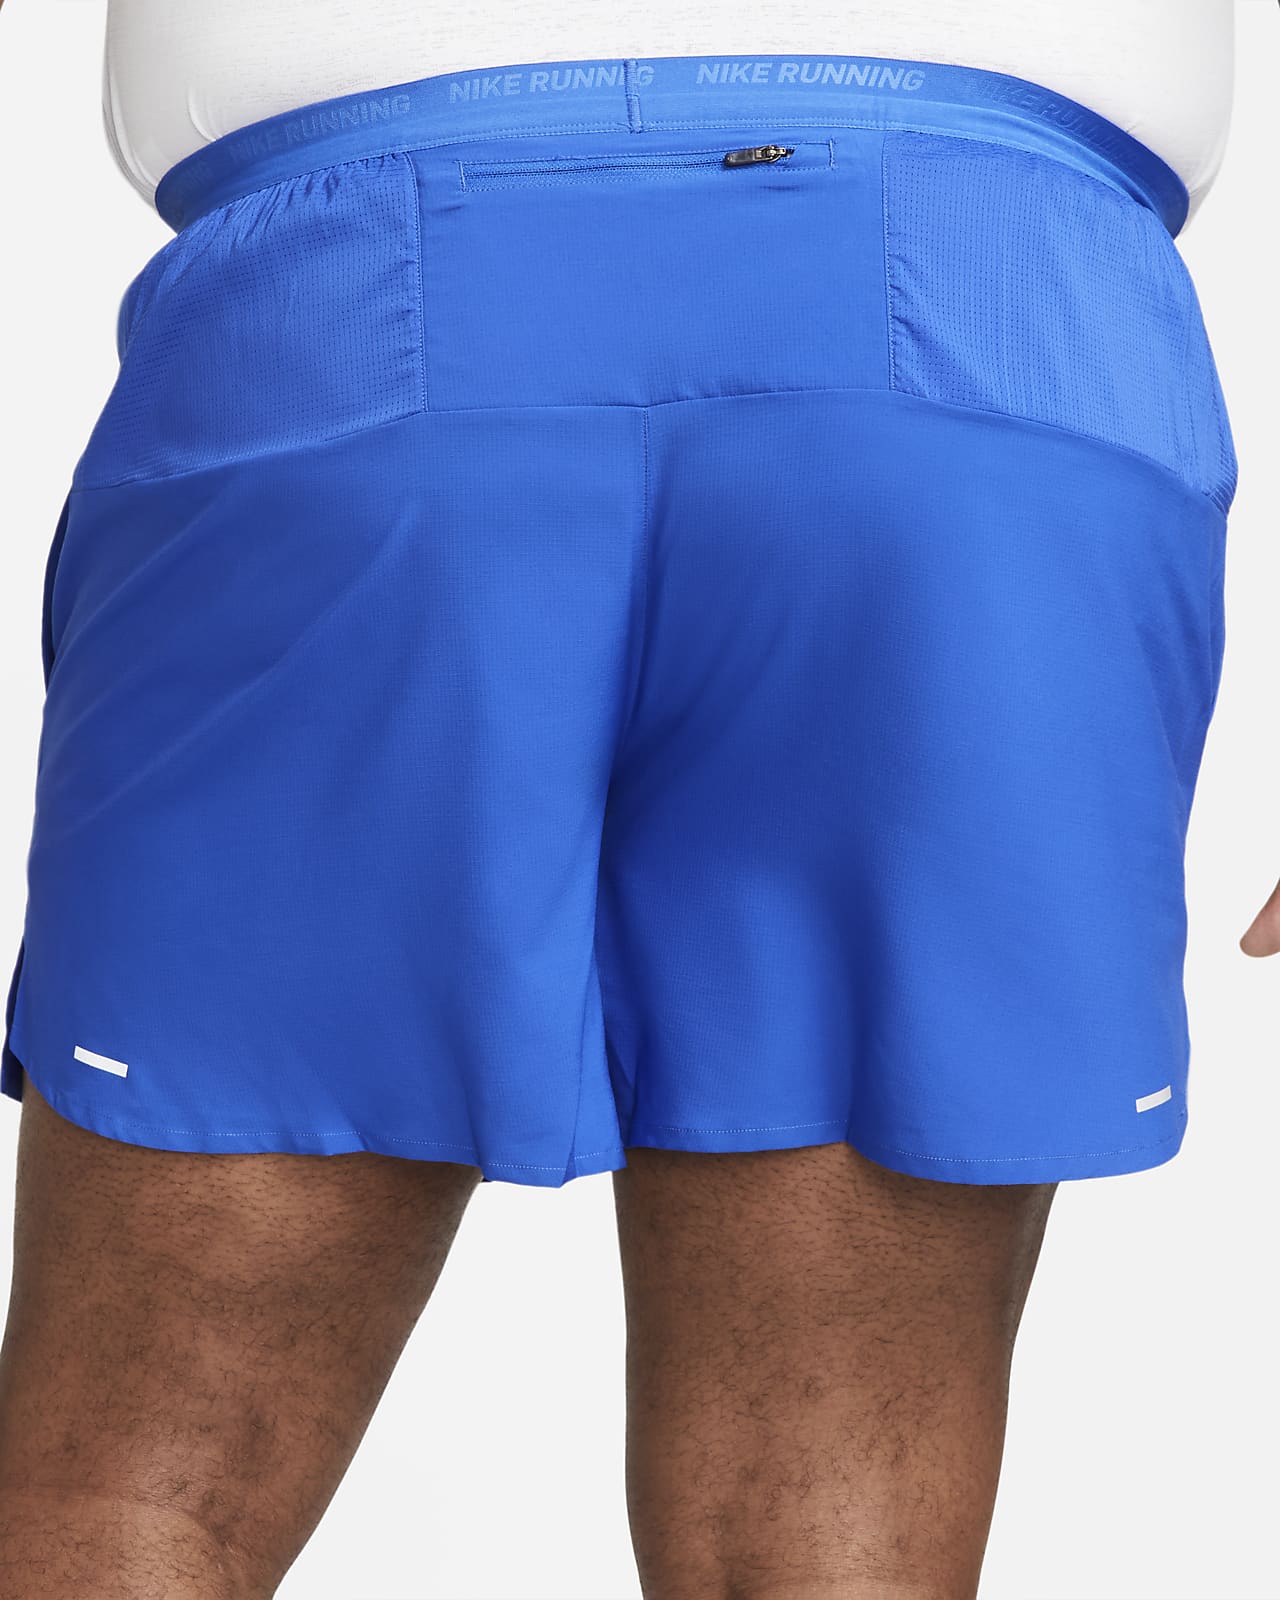 Short avec sous-short intégré Dri-FIT Nike Pro pour homme. Nike CH